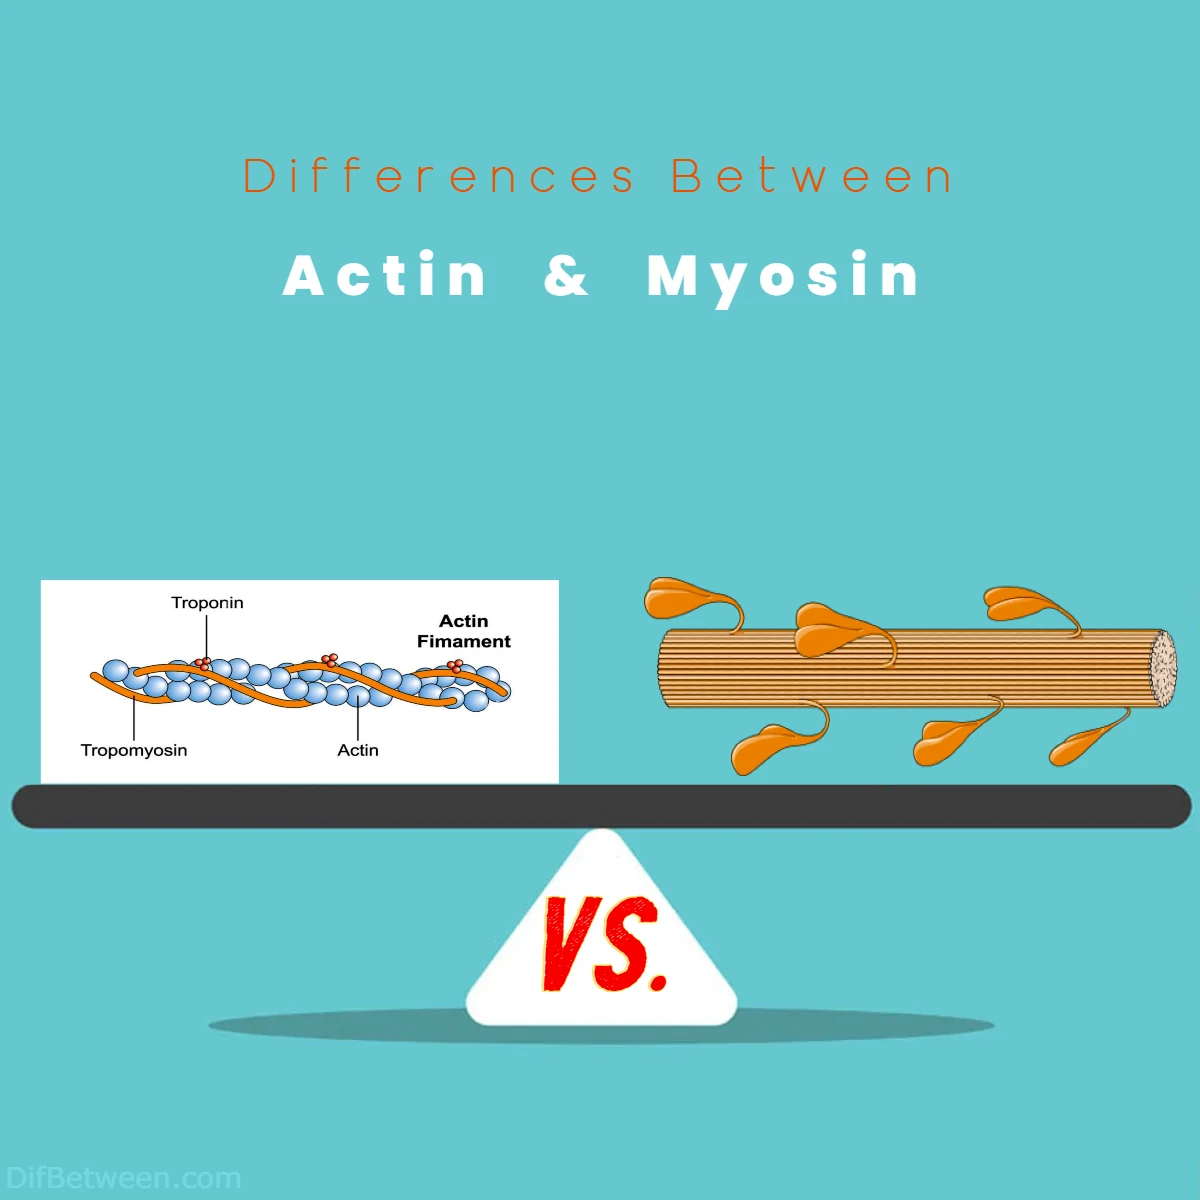 Differences Between Actin vs Myosin